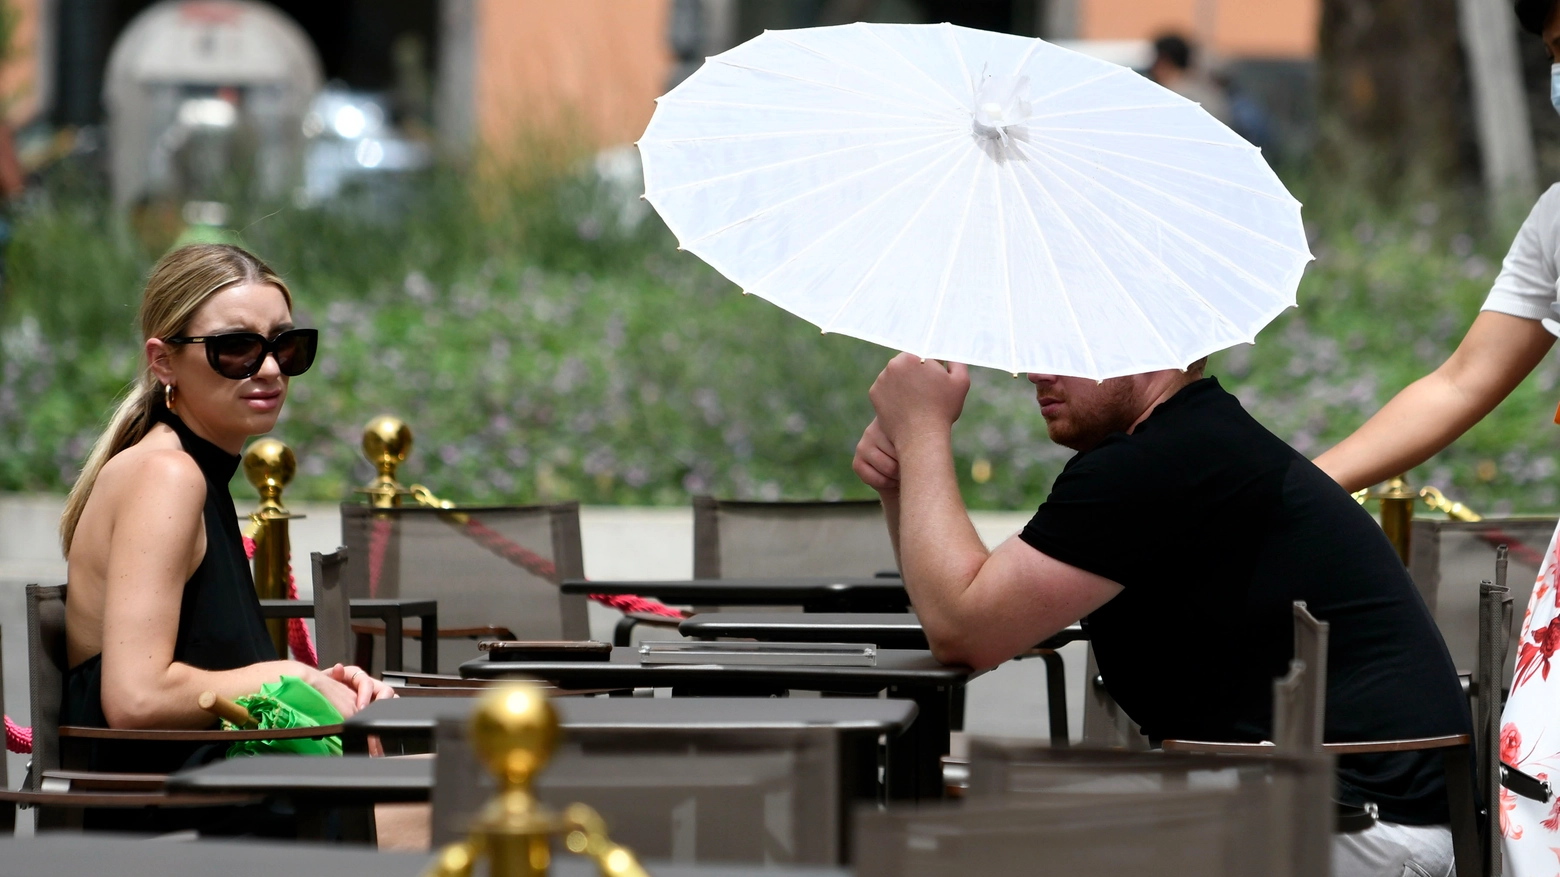 Un ombrello per ripararsi dal sole: caldo africano in  Italia